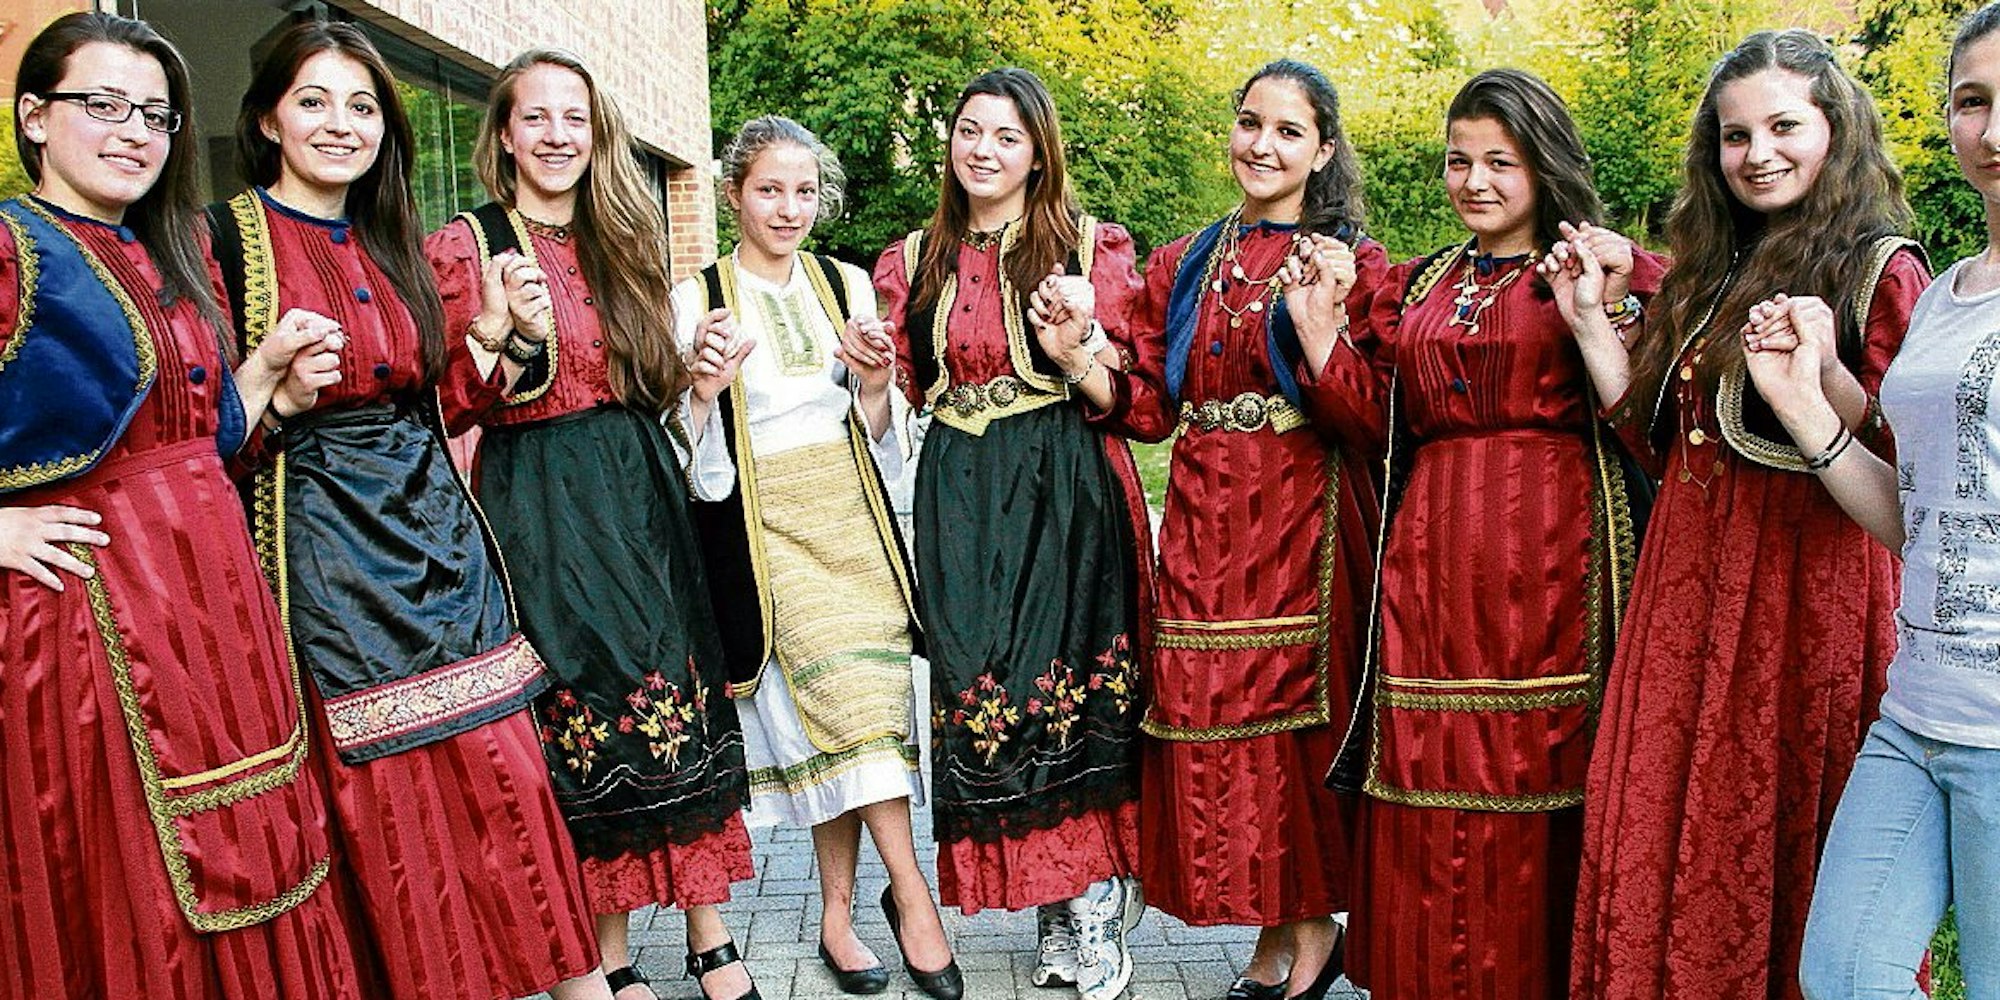 Die aufwendig verzierten roten Trachten der Tänzerinnen stehen für die griechische Region Thessalien.